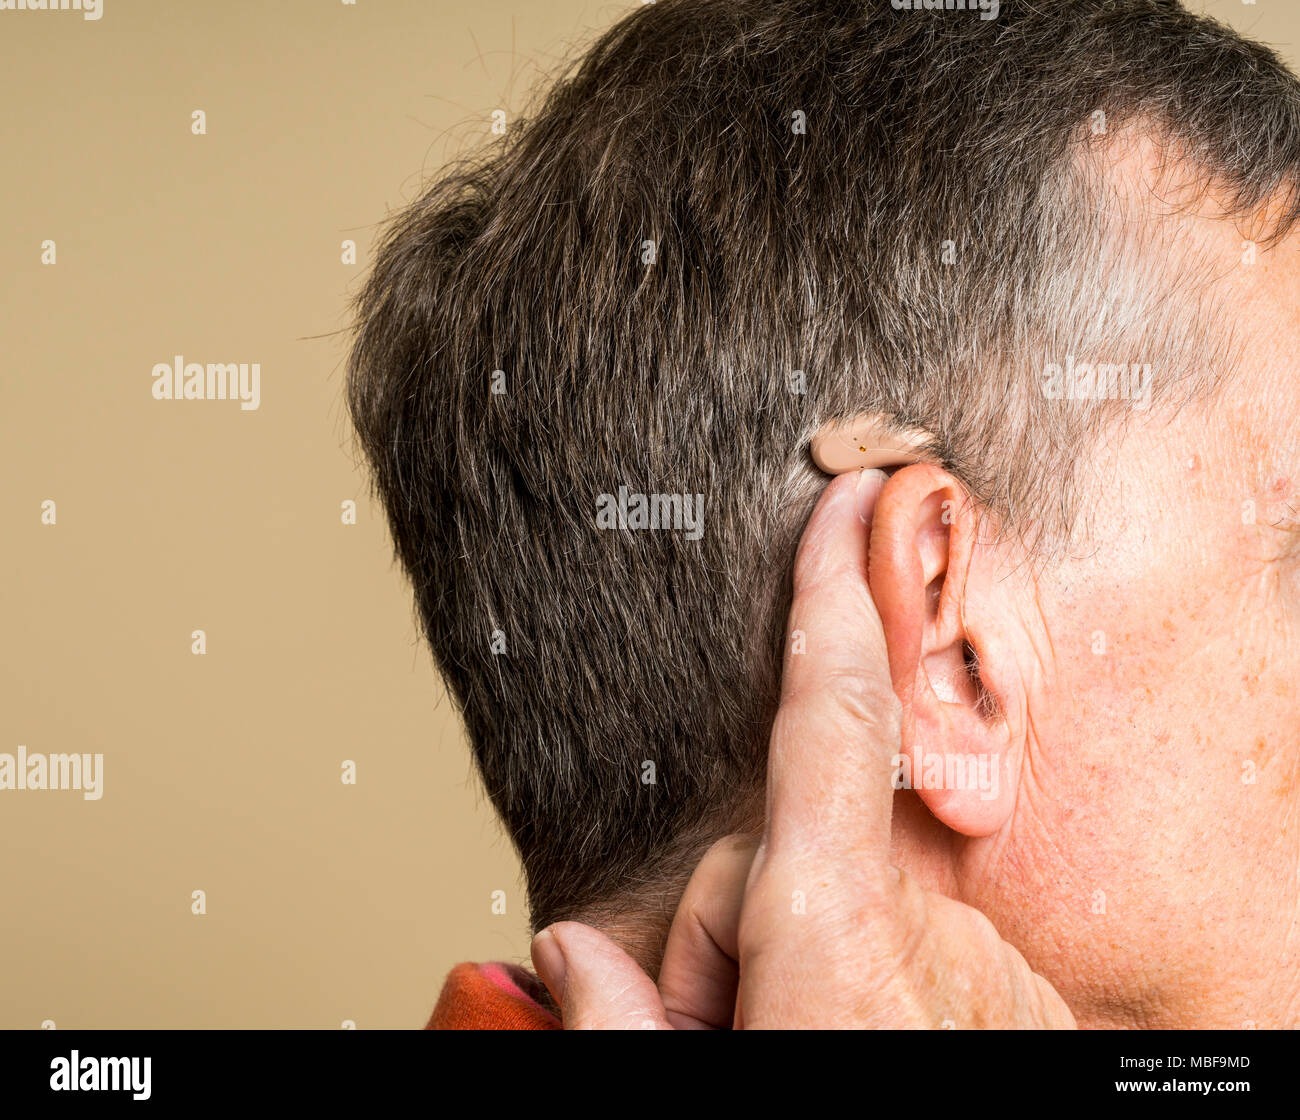 Hauts homme portant une petite aide auditive moderne caché derrière l'oreille Banque D'Images